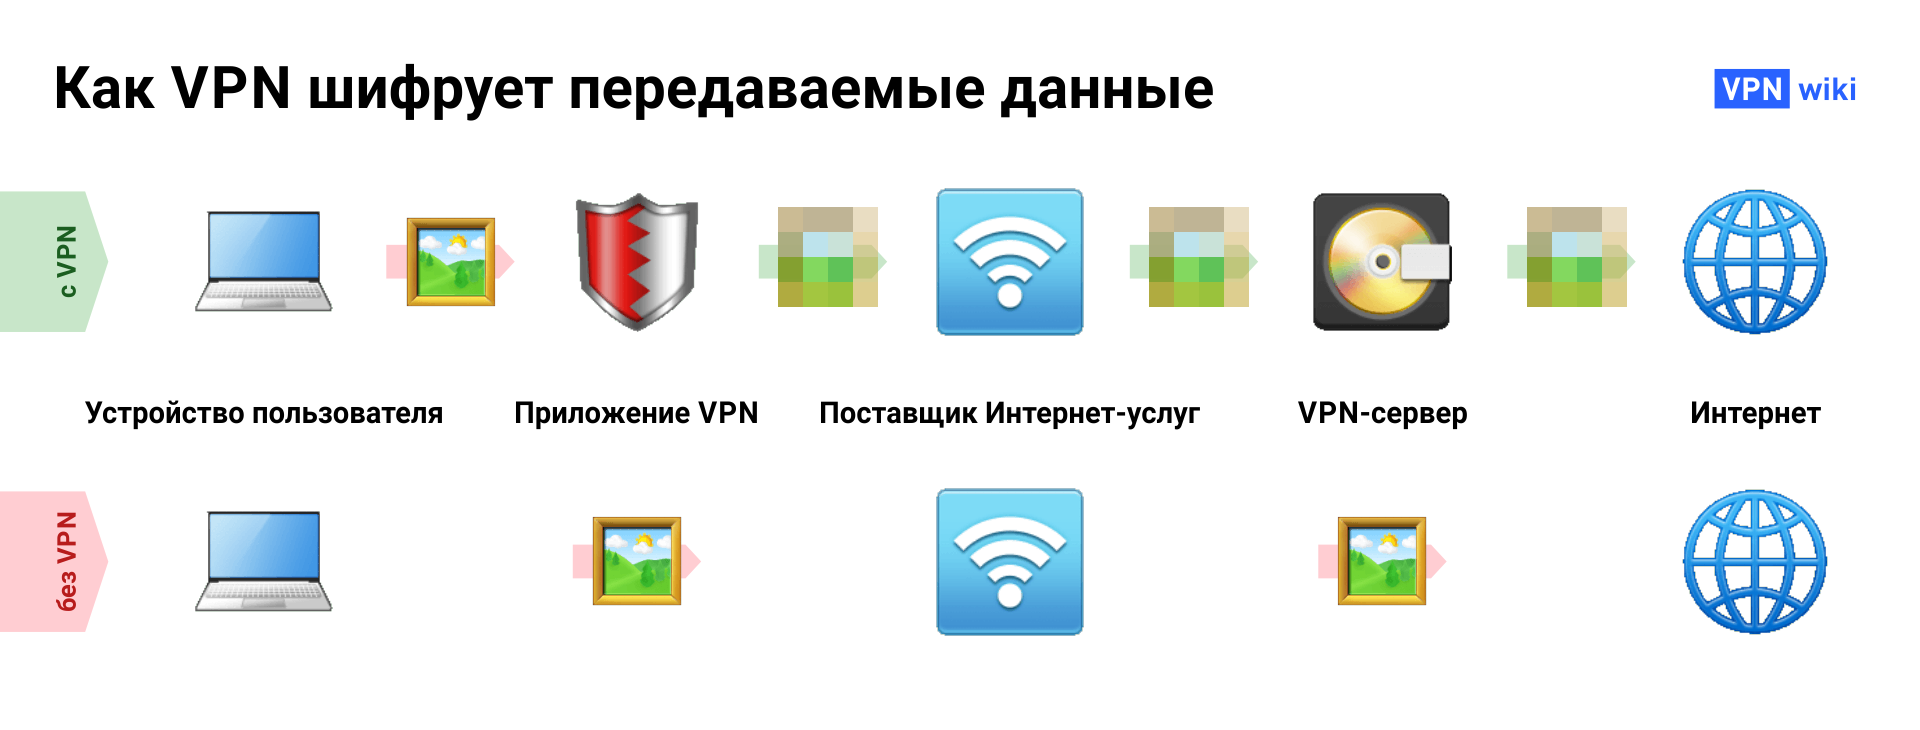 Что такое VPN и как она работает? 4 примера использования